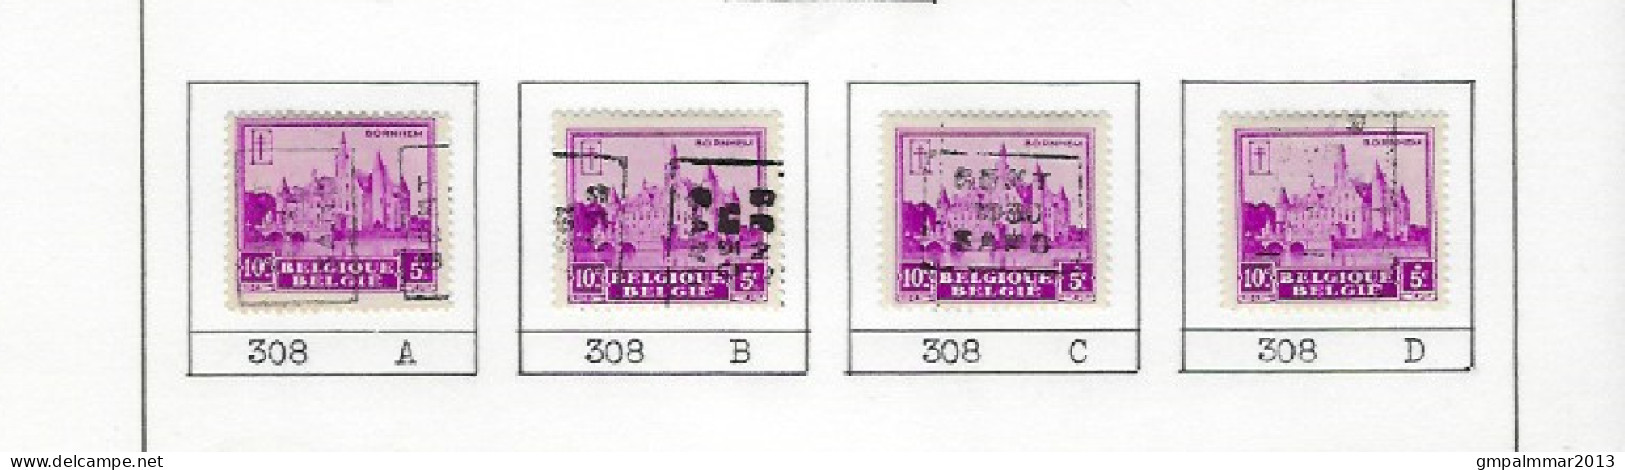 Zegel Nr. 308  voorafstempeling Nr. 5959 GENT 1930  GAND In De 4 Posities , A  B  C  en D ; Staat Zie Scan ! - Roller Precancels 1930-..